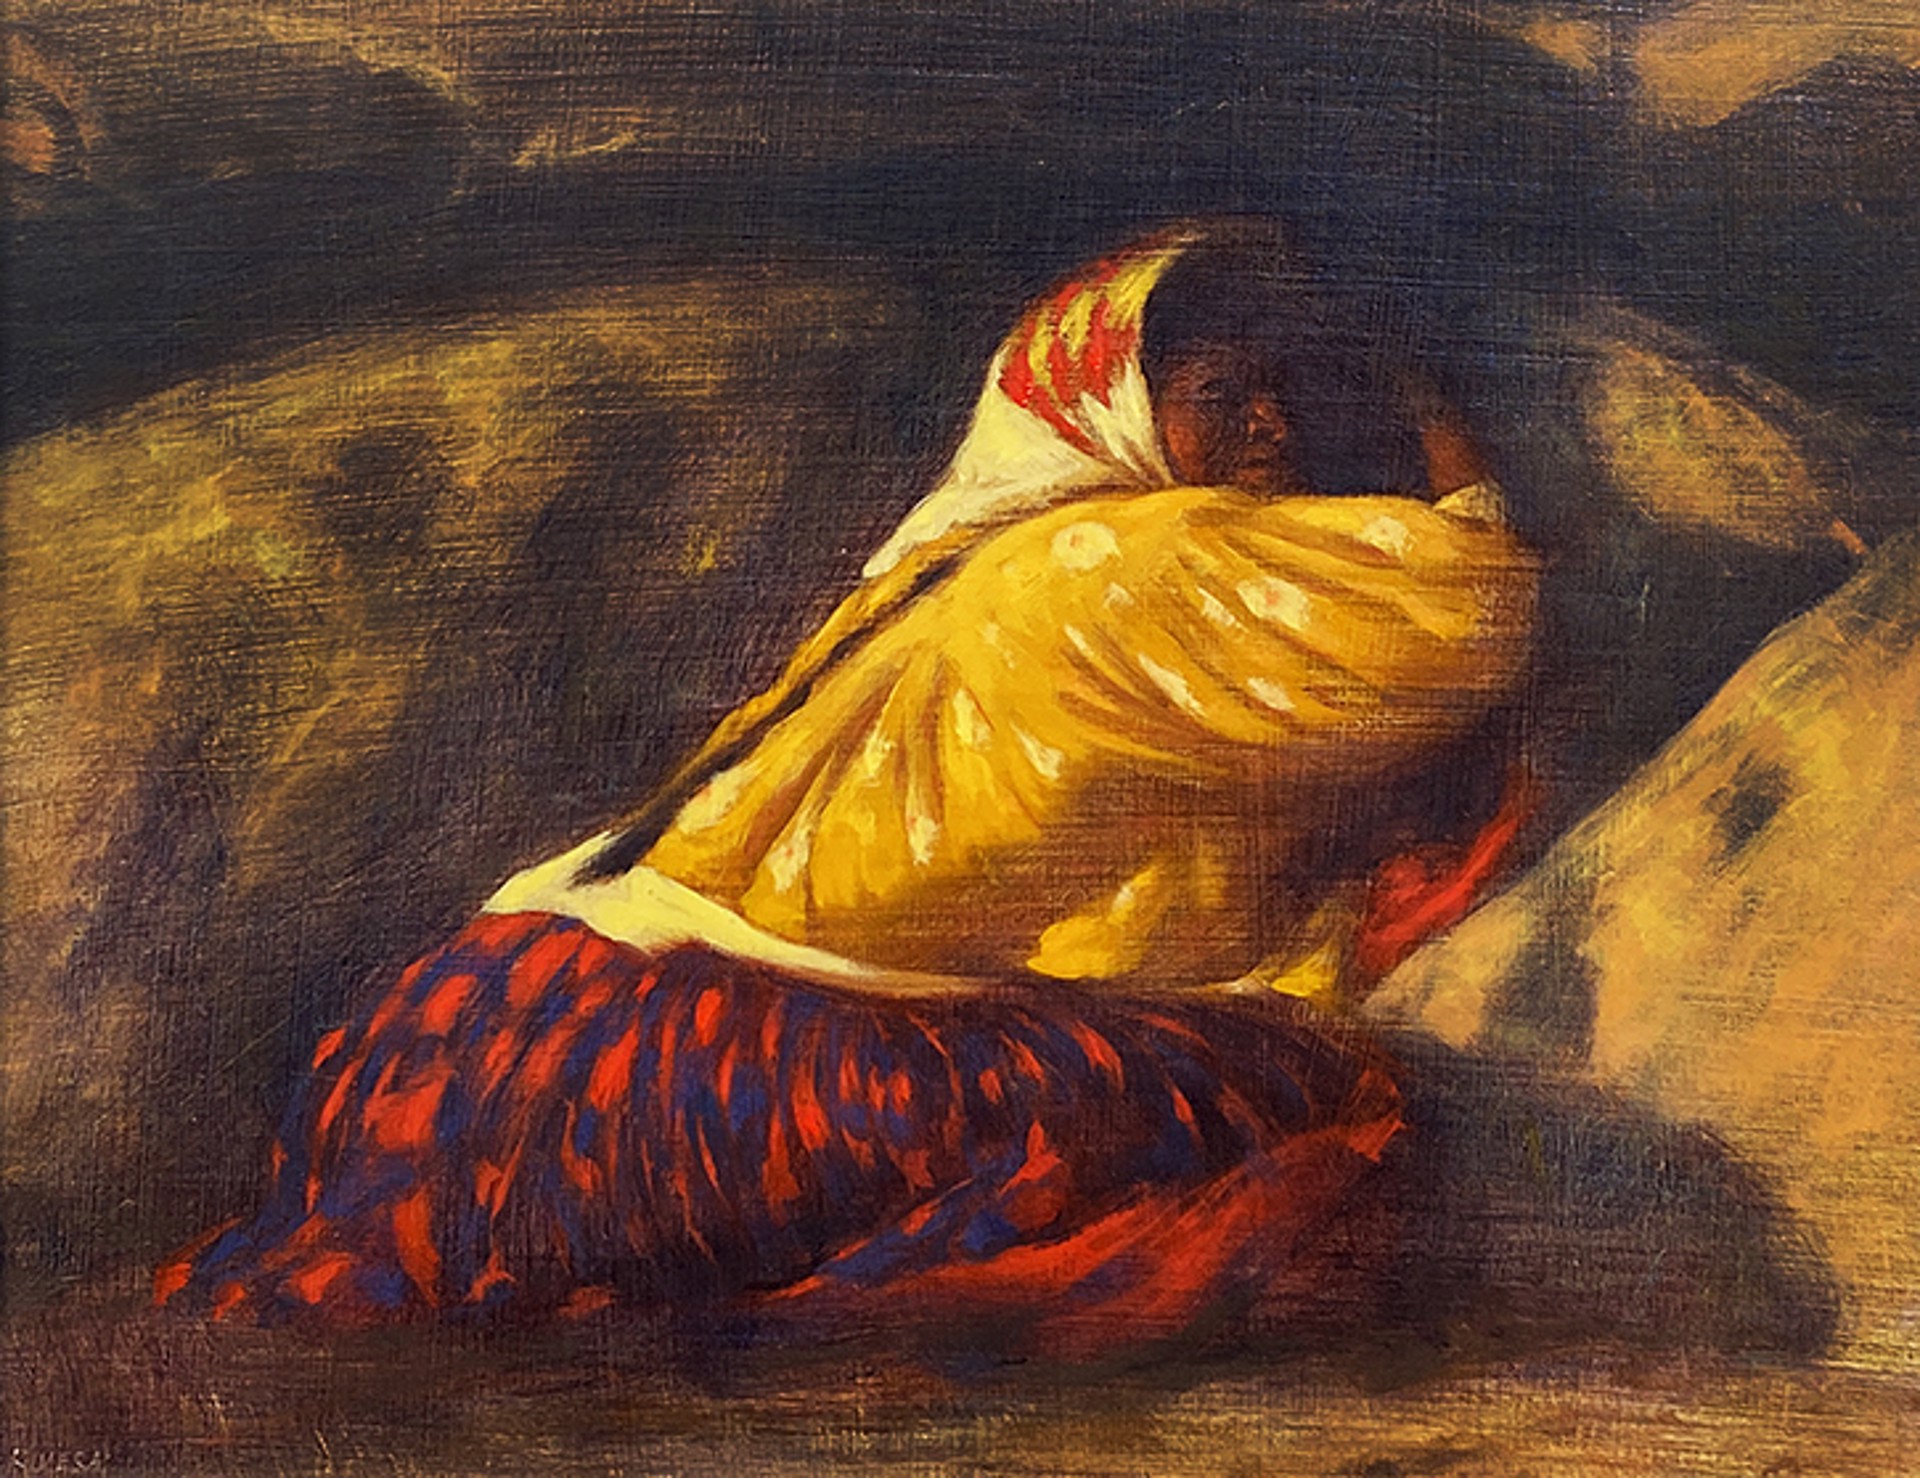 (Tarahumara Woman) by Elias Rivera